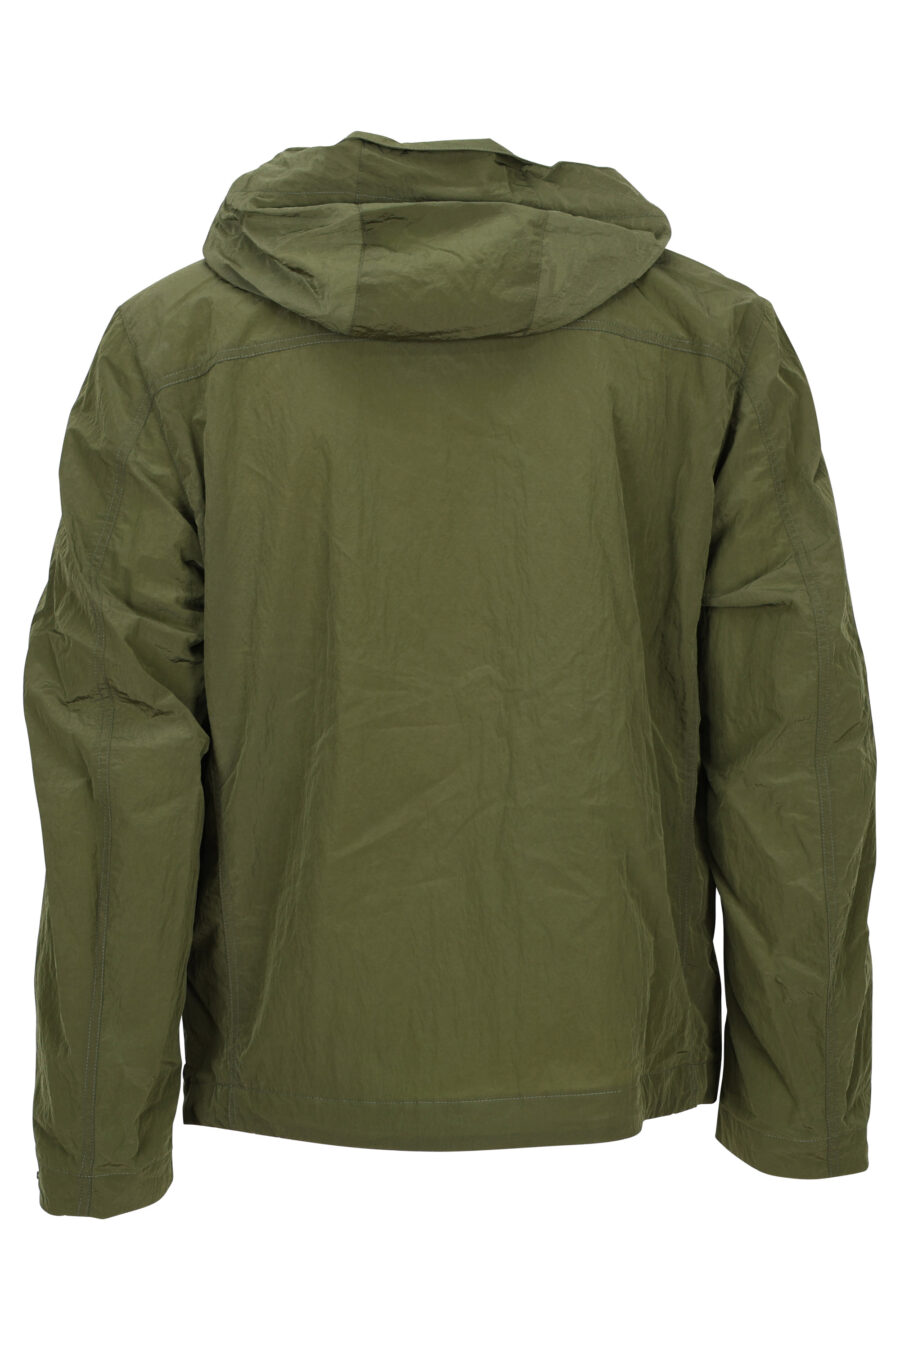 Chaqueta verde militar con capucha y detalles verde lima - 8058610789183 2